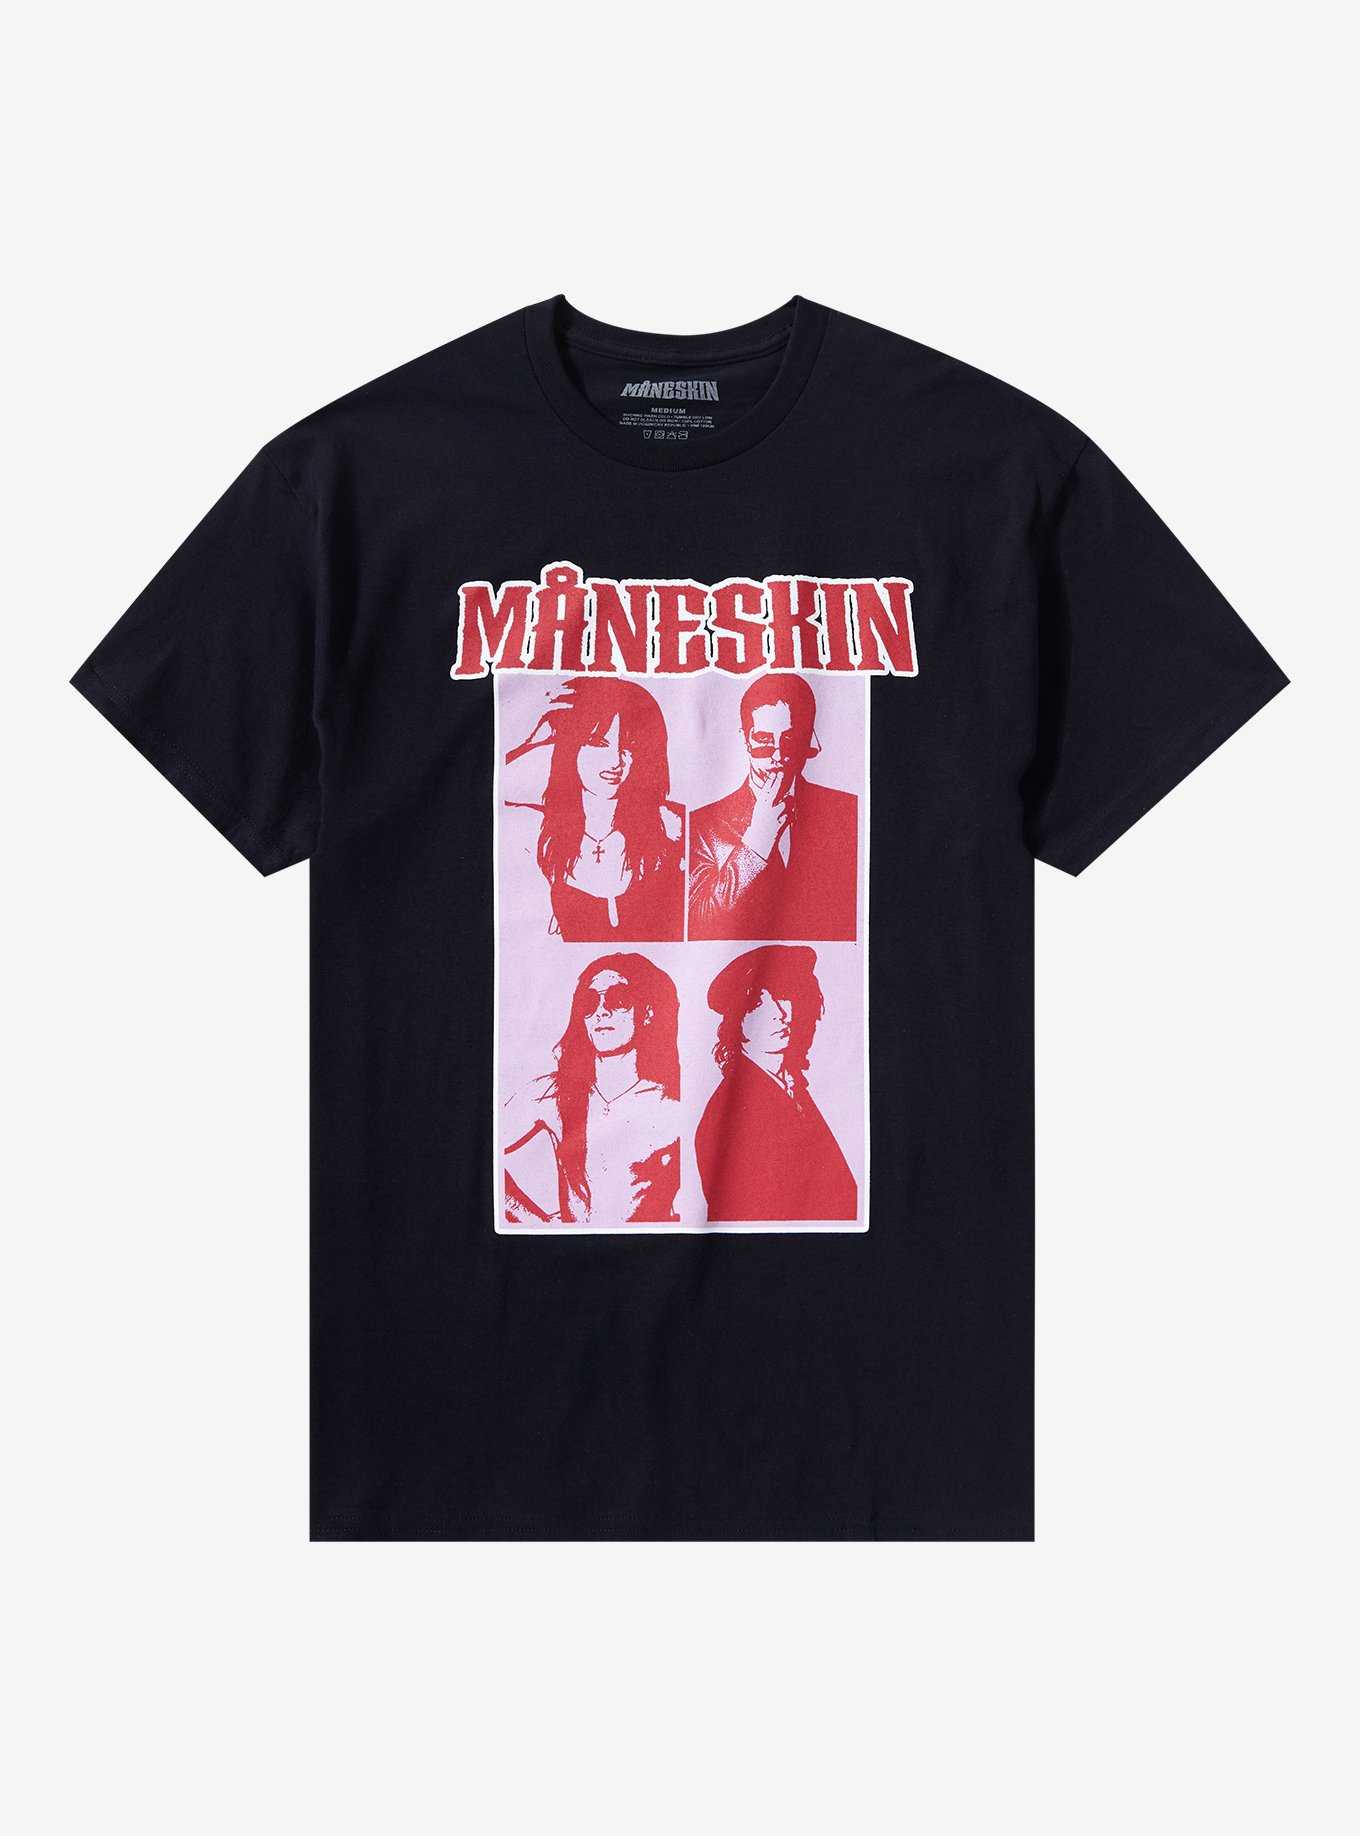 Maneskin Portrait Grid Boyfriend Fit Girls T-Shirt, , hi-res